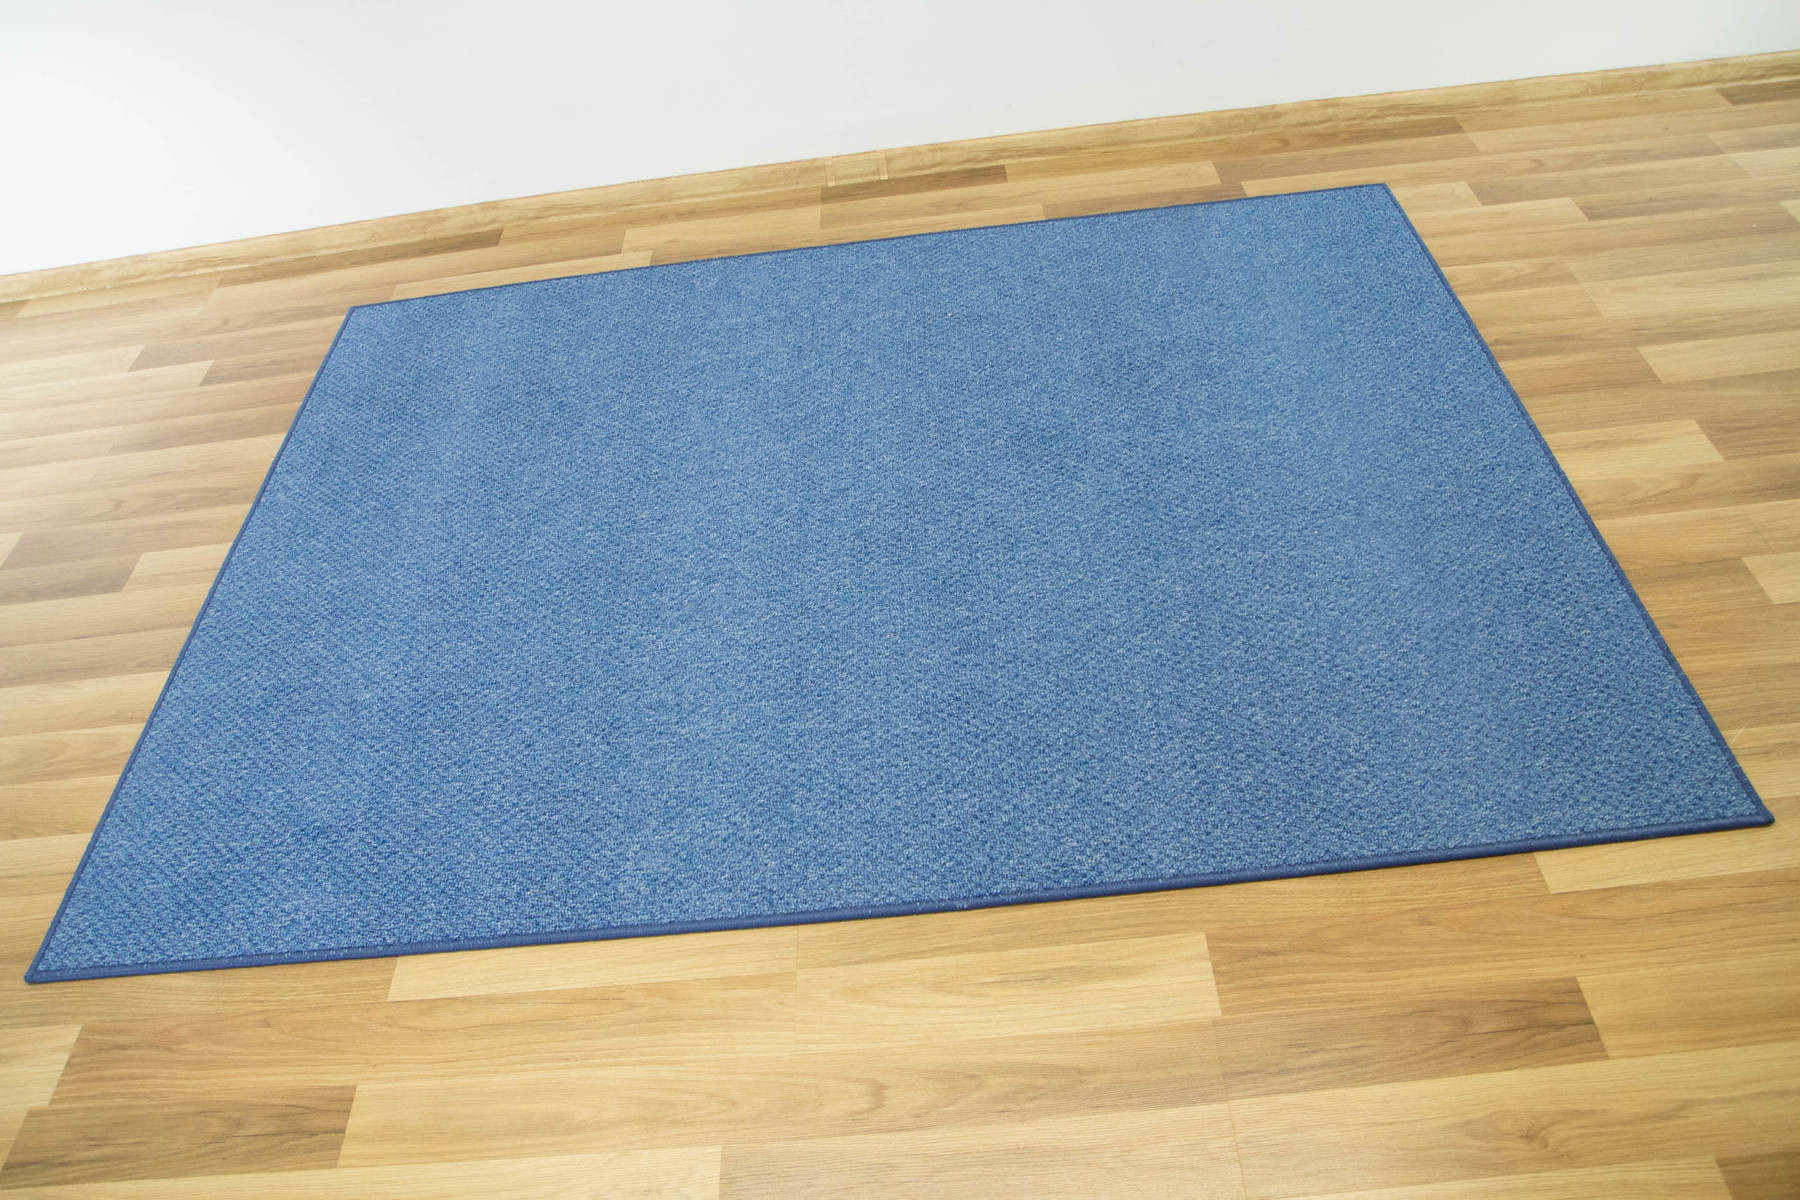 Metrážny koberec Stockholm 83 modrý